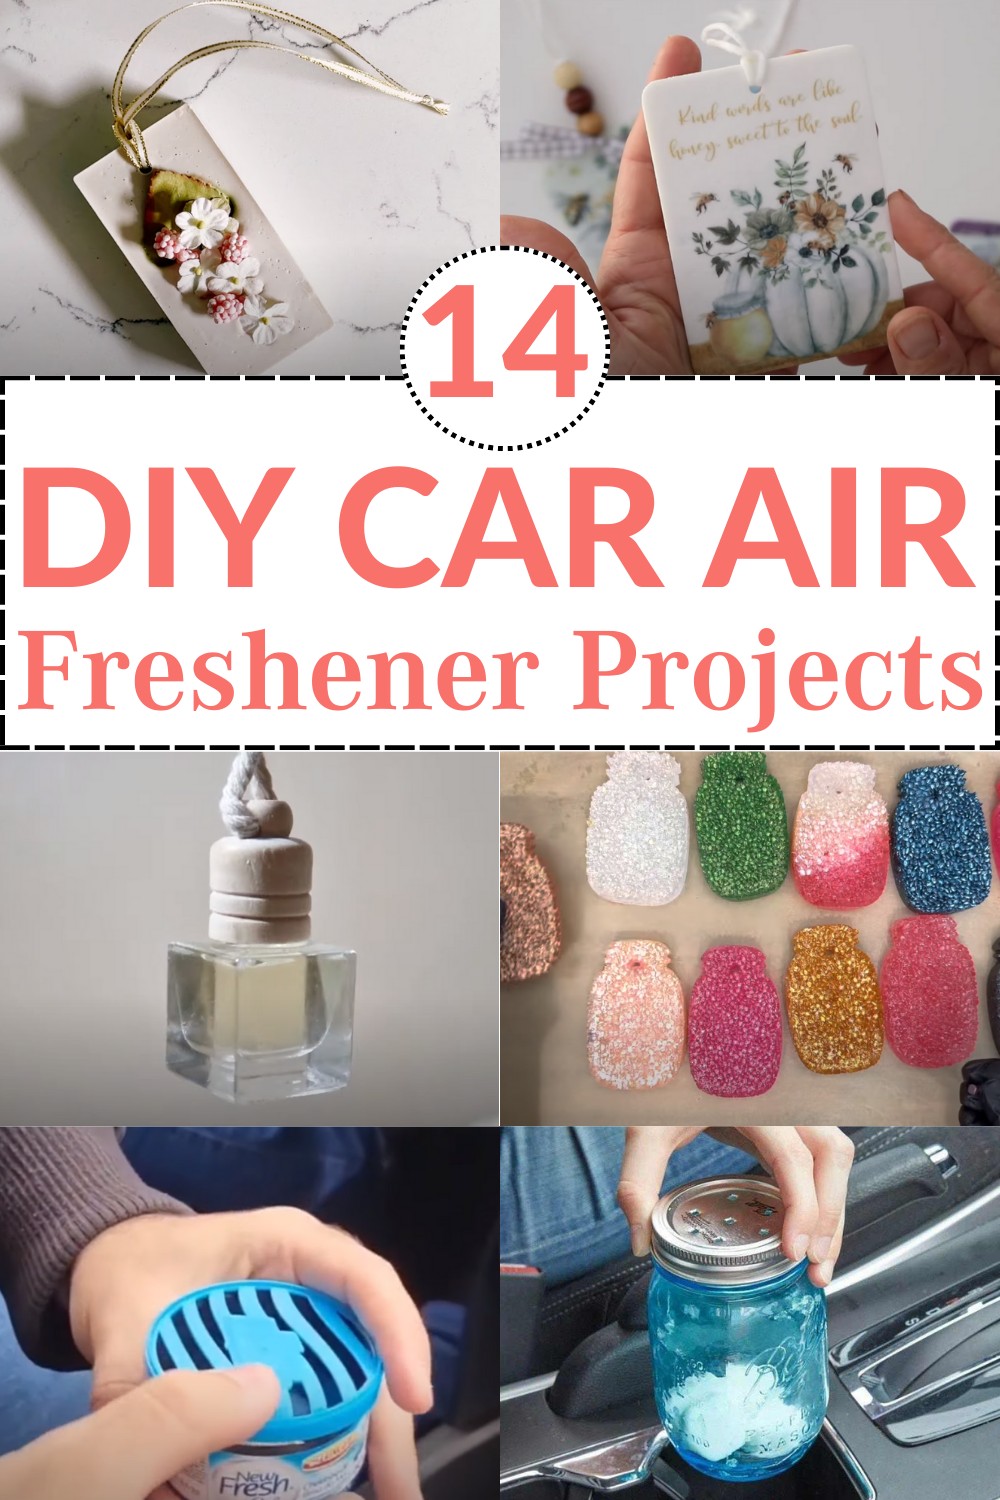 DIY Car Air Freshener Projects